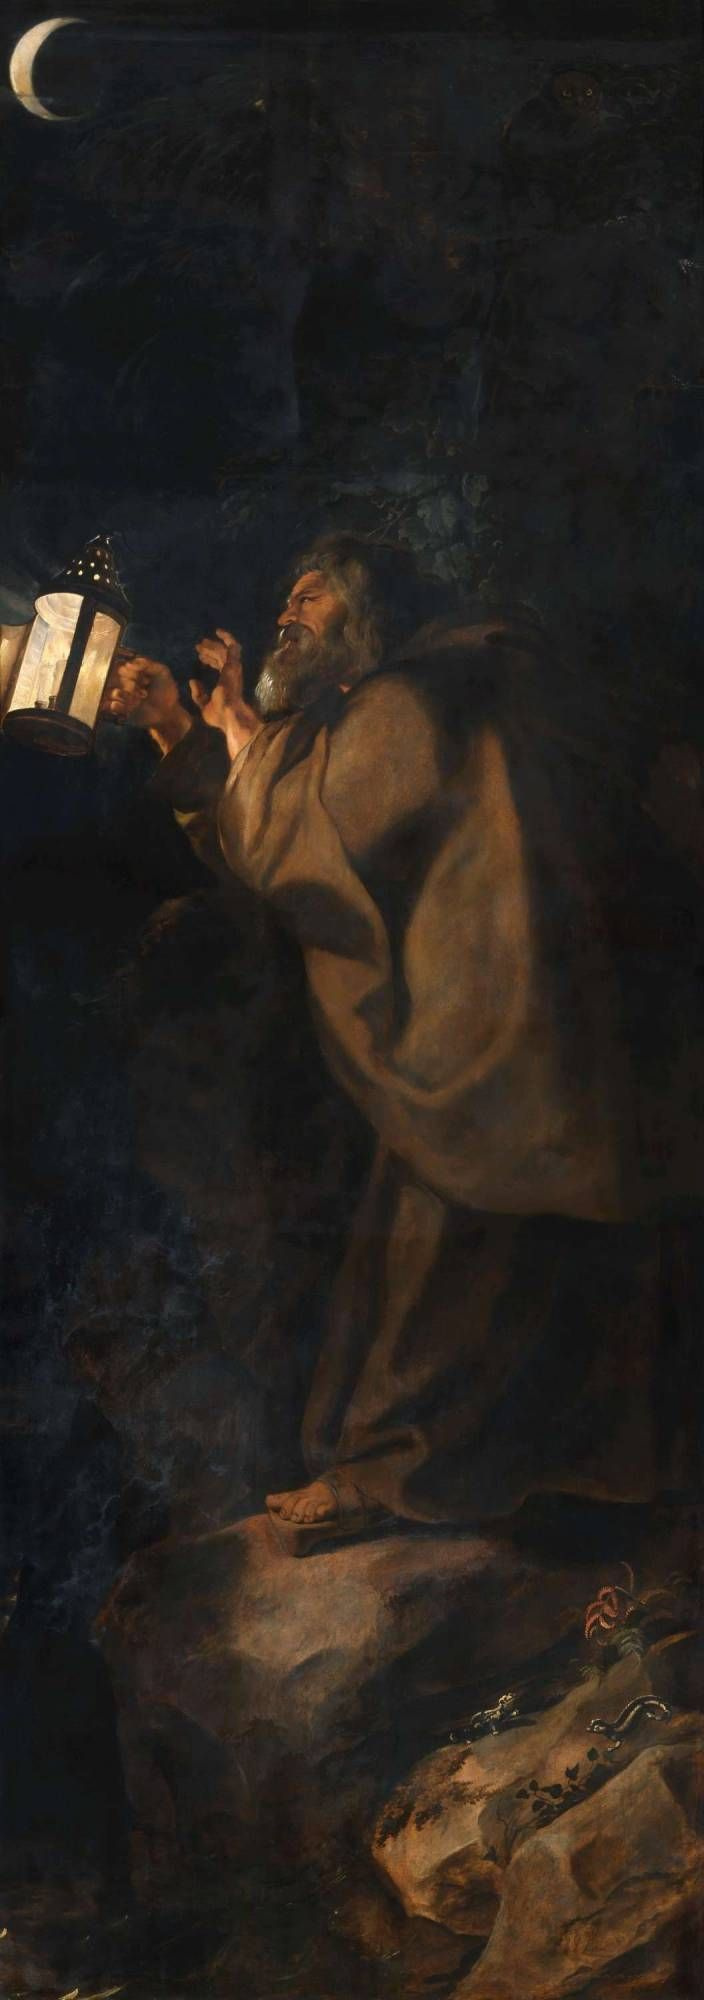 Питер Пауль Рубенс. Снятие с креста (фрагмент, обратная сторона правой створки - Отшельник с фонарем)